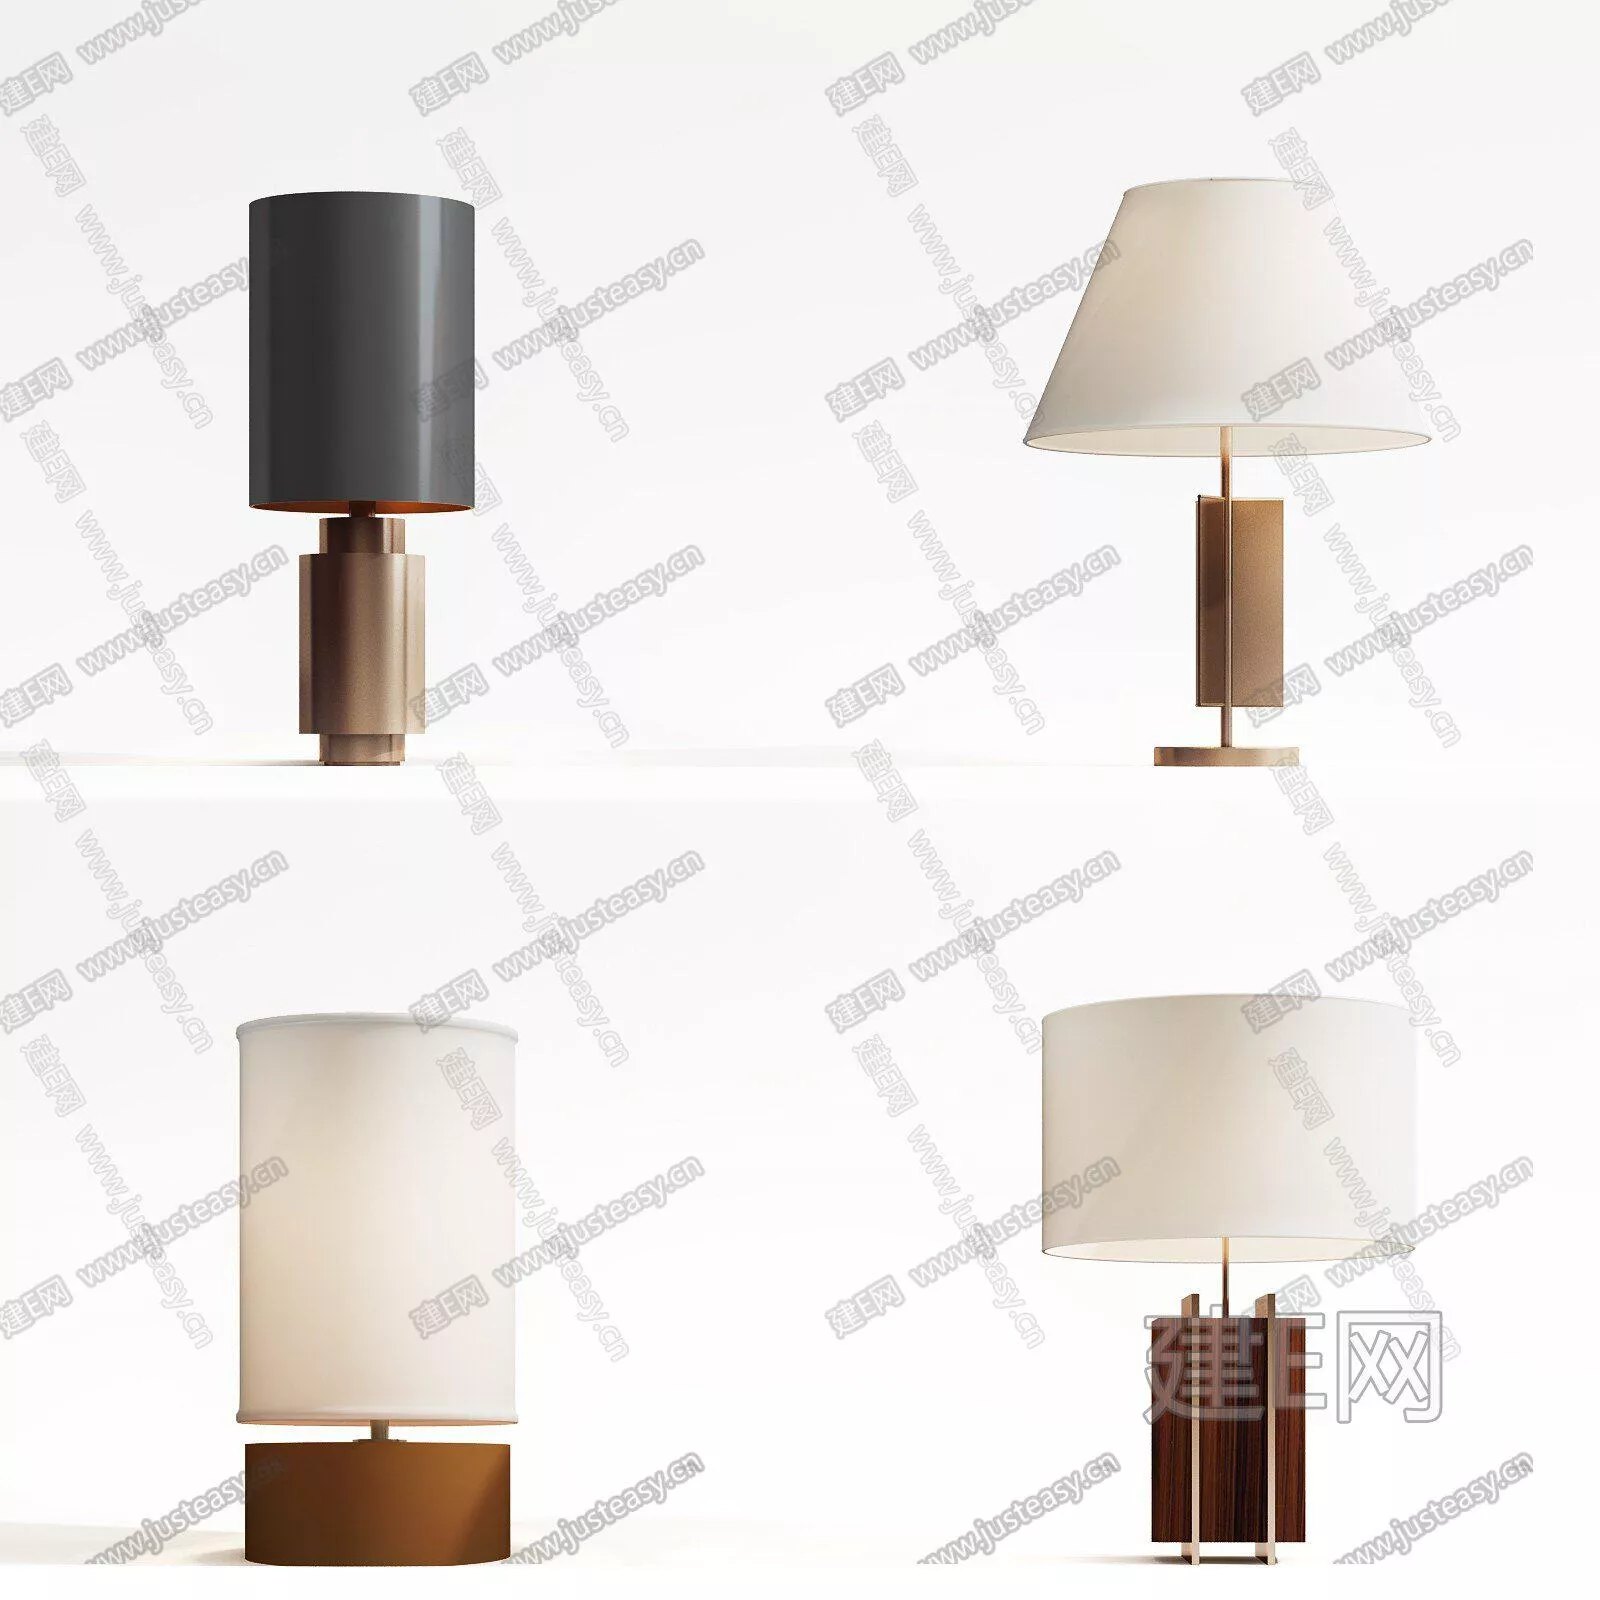 MODERN TABLE LAMP - SKETCHUP 3D MODEL - ENSCAPE - 112414057